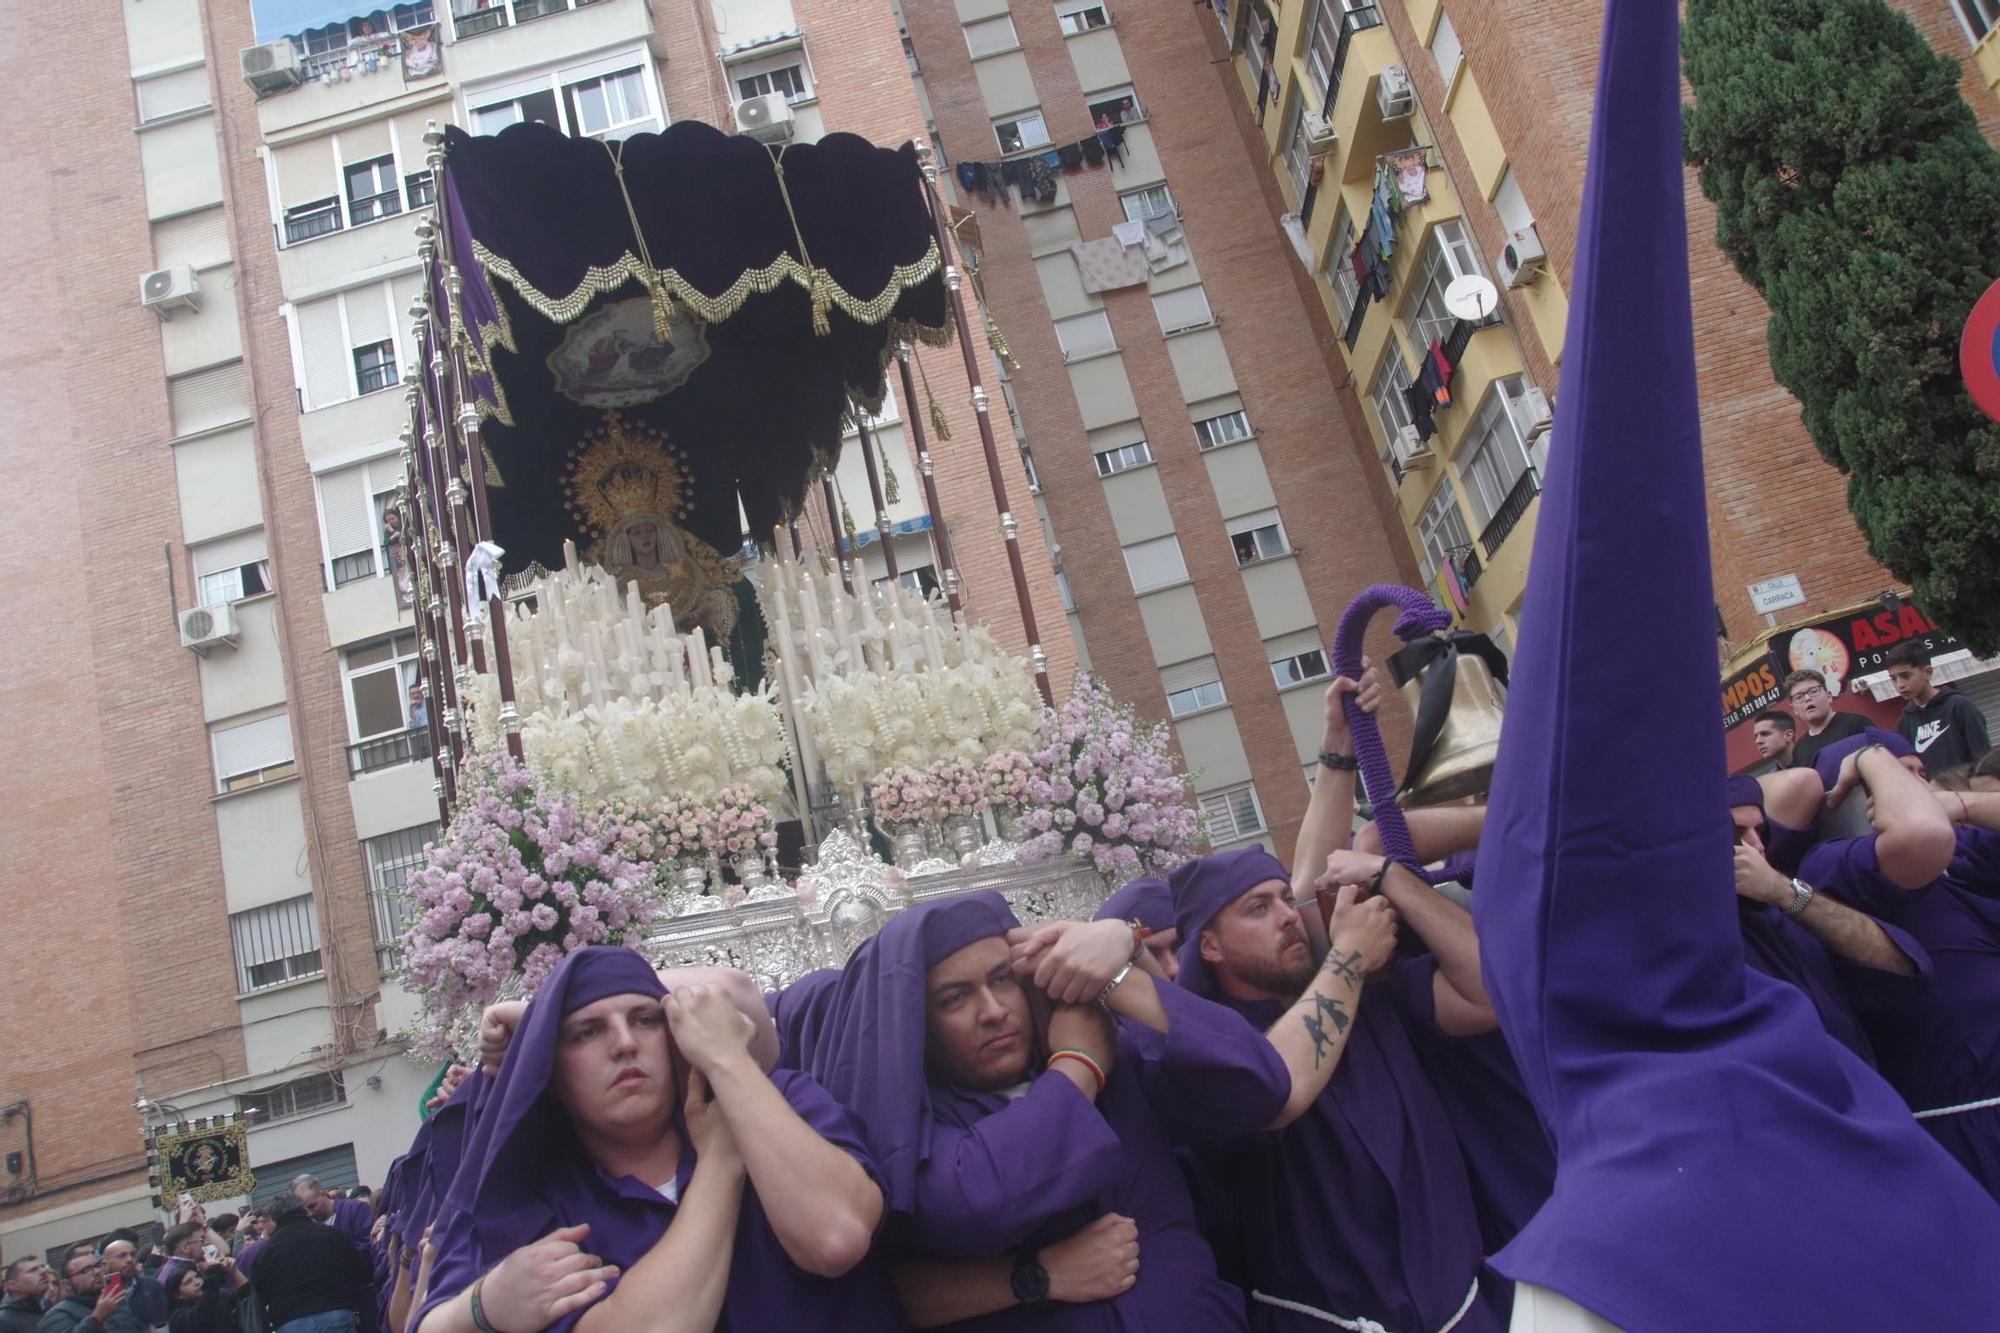 La procesión de la Virgen del Refugio de Miraflores, en fotos.